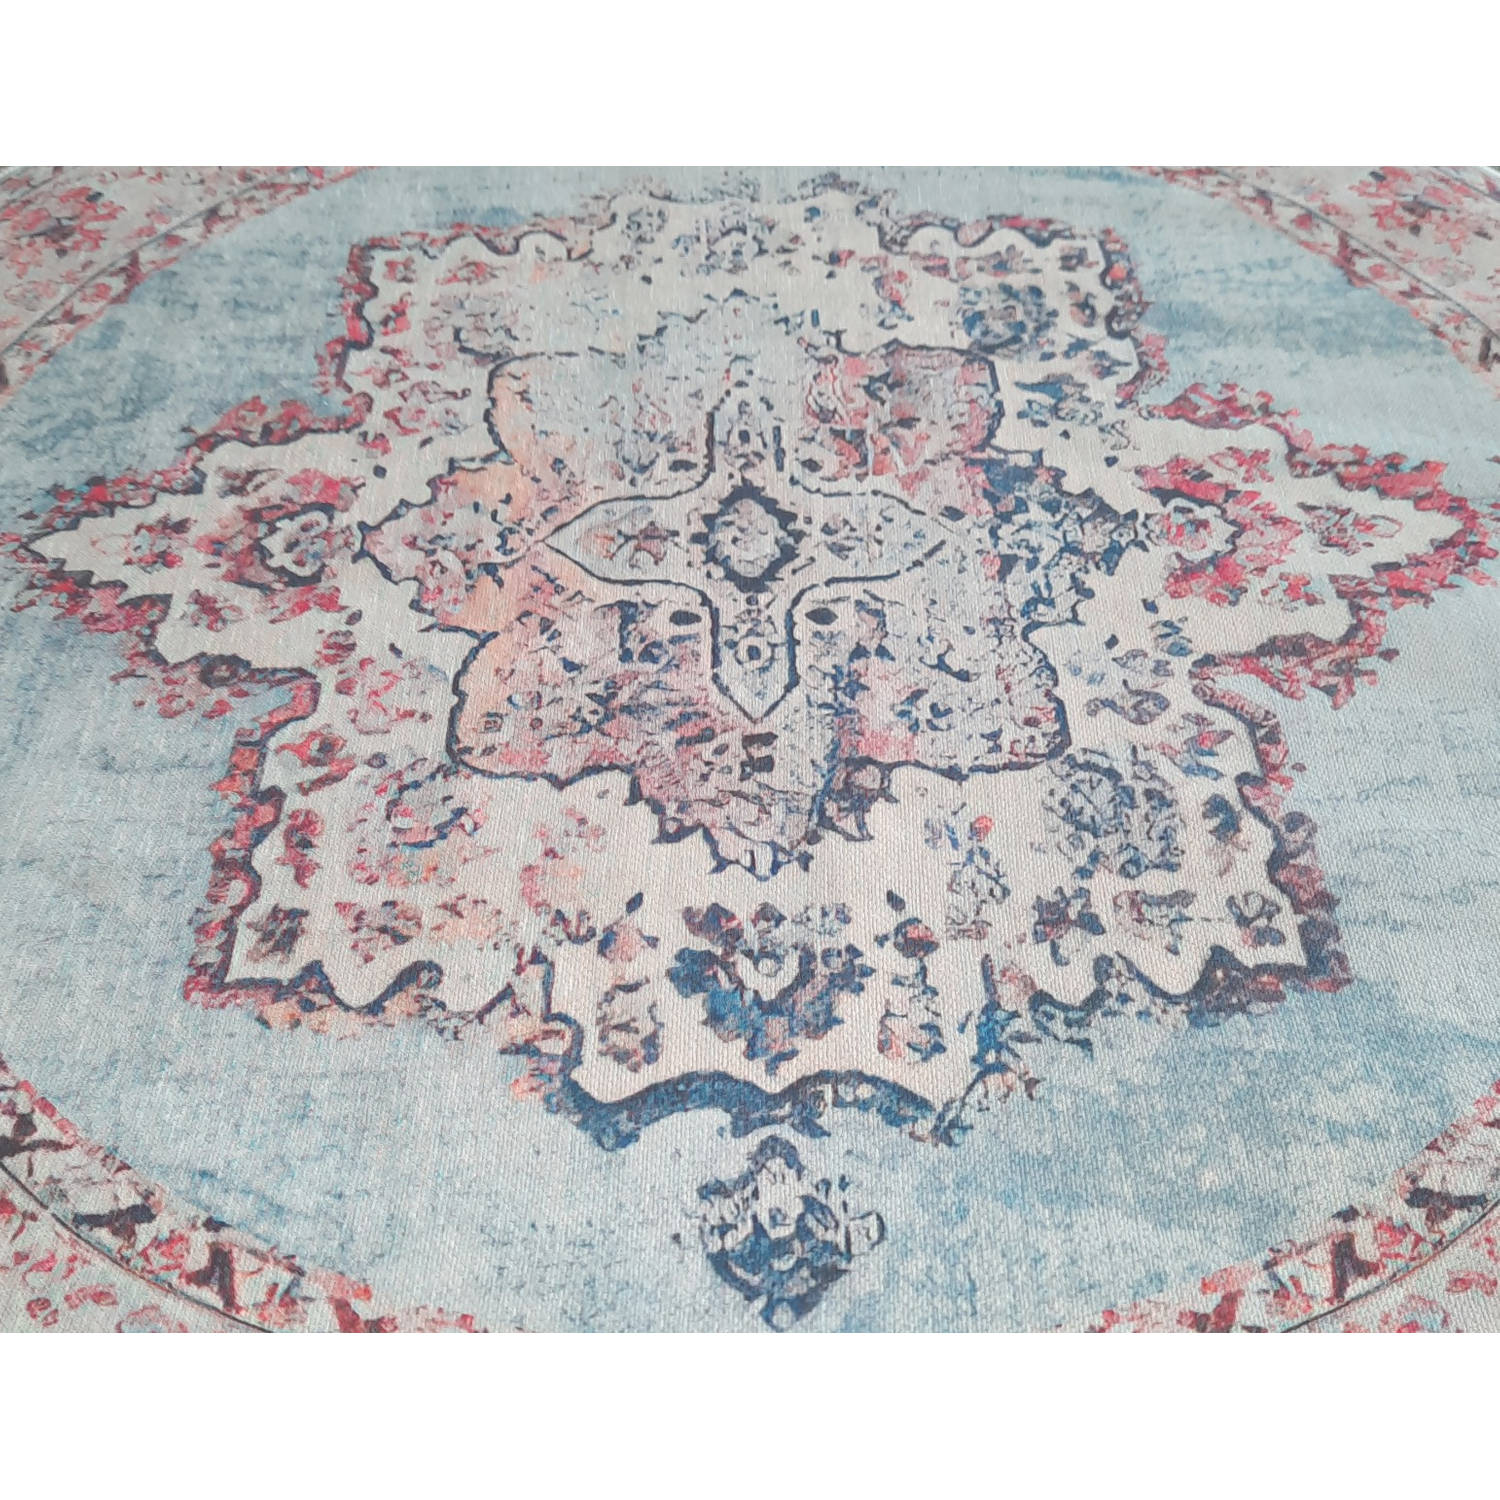 Toegangsprijs Betreffende Zelfrespect Vloerkleed rond vintage 180cm wit rood perzisch oosters tapijt | Blokker